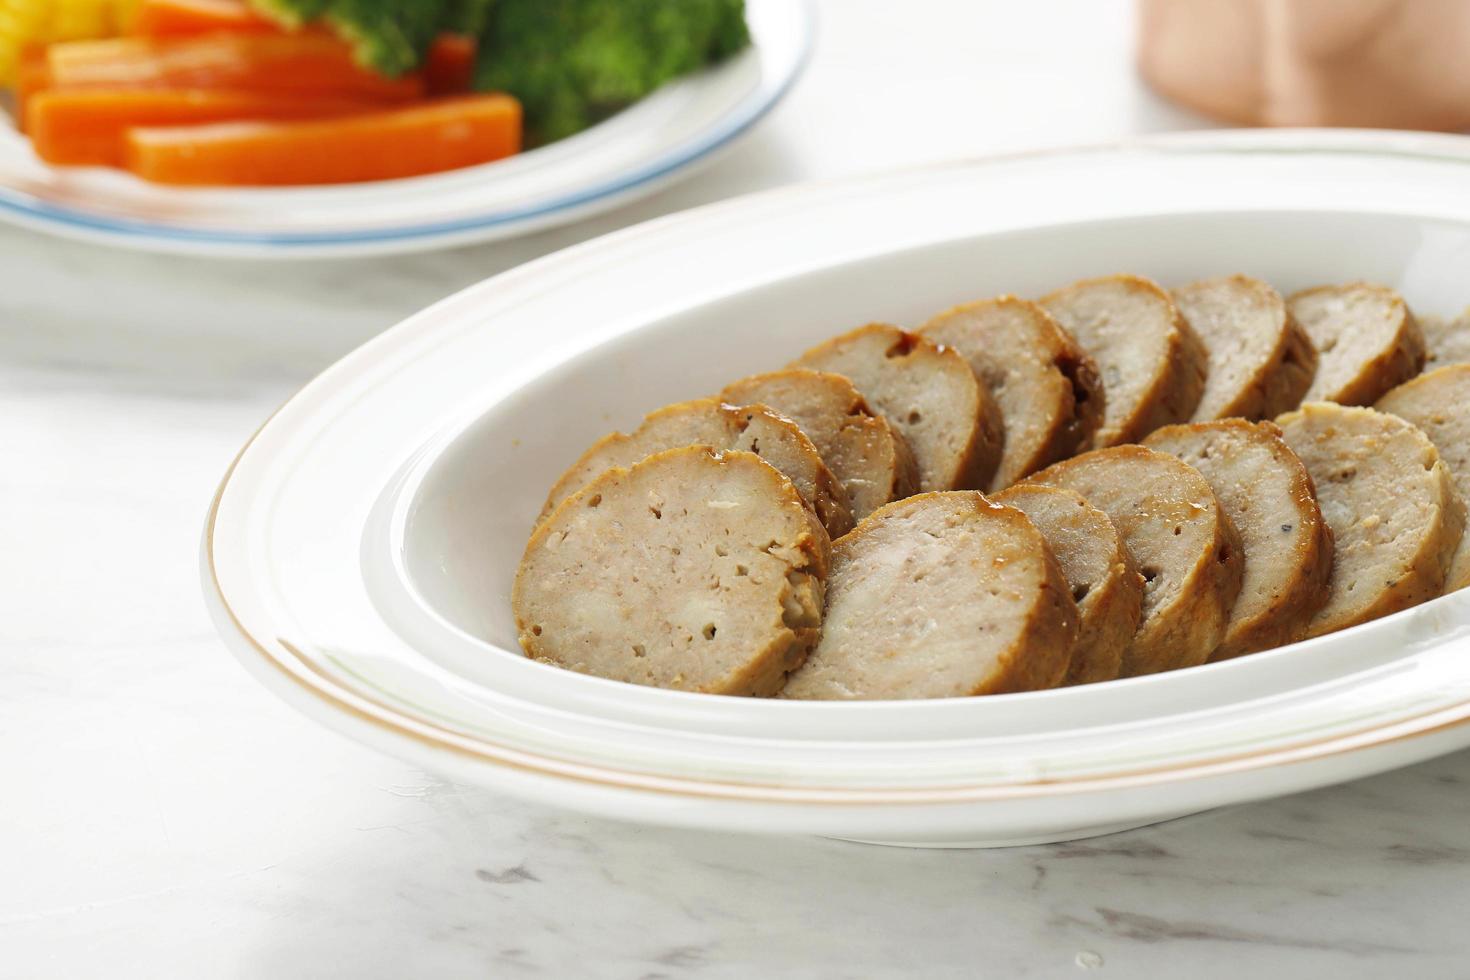 galantina ou bolo de carne é um frango moído enrolado com farinha, servido com legumes no vapor e molho de churrasco foto